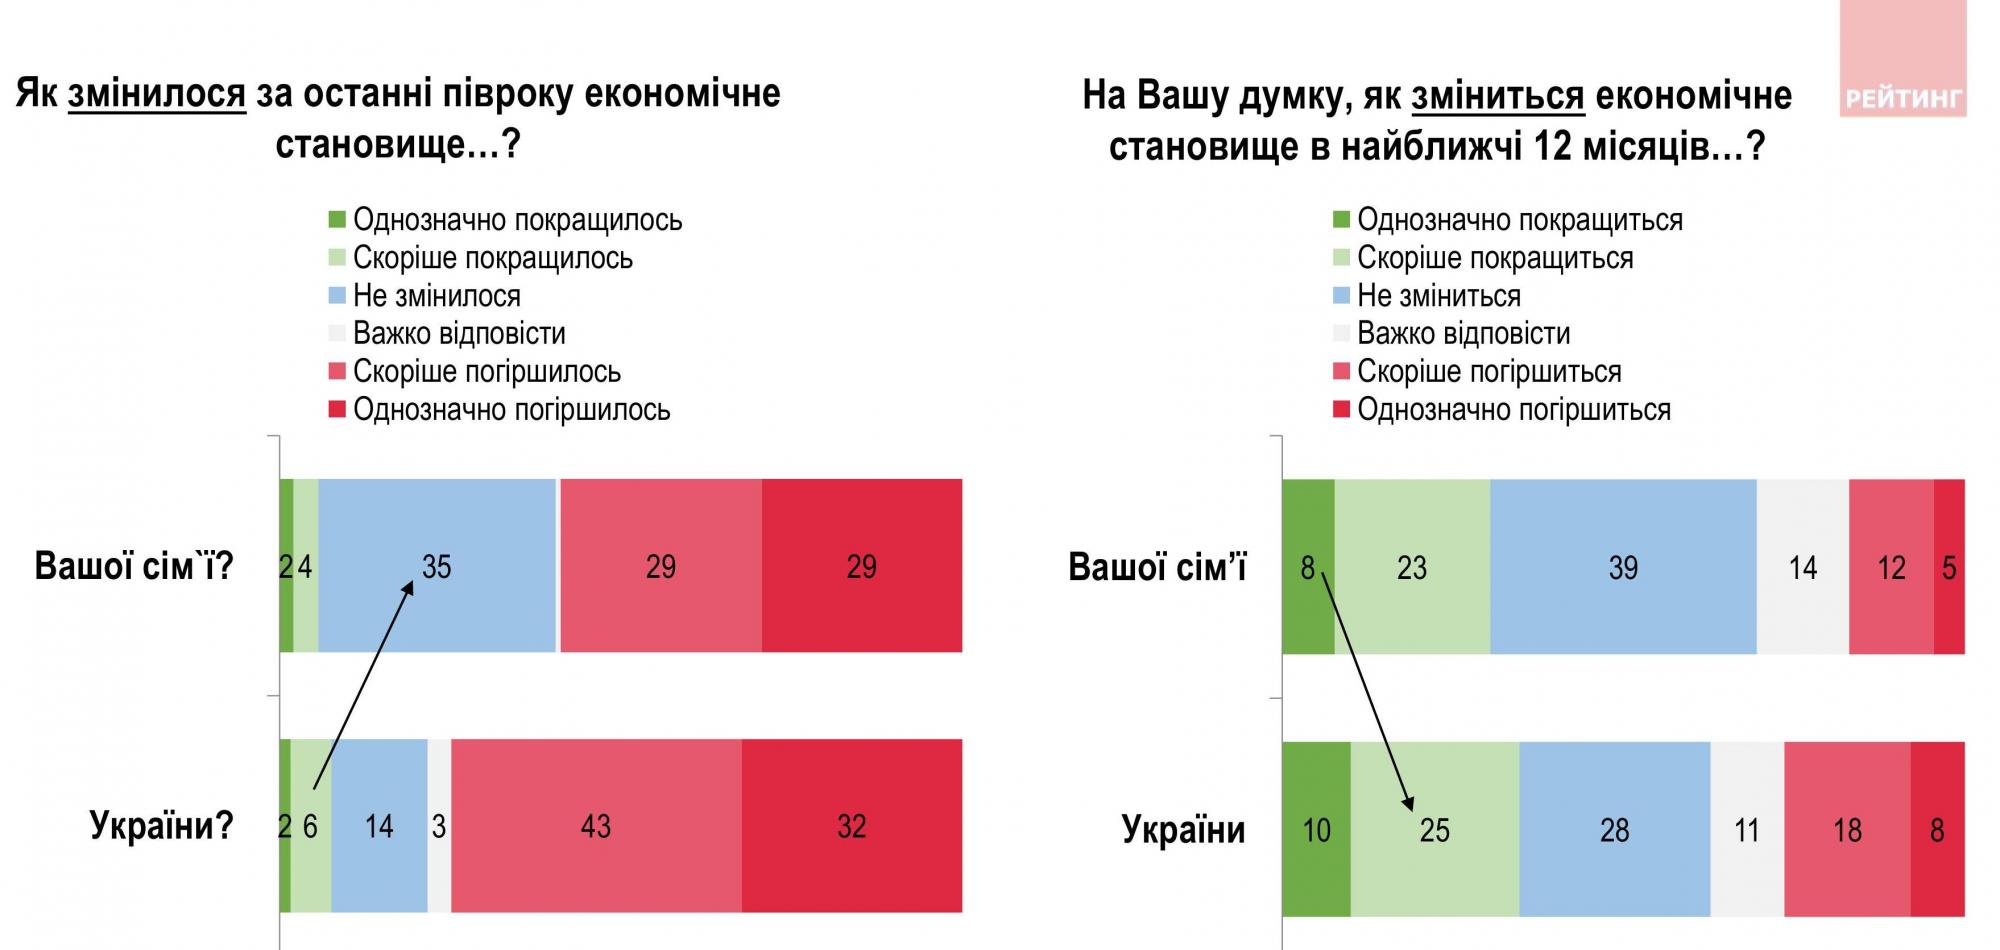 Більшість українців відчули погіршення економічного становища, майже третина без роботи